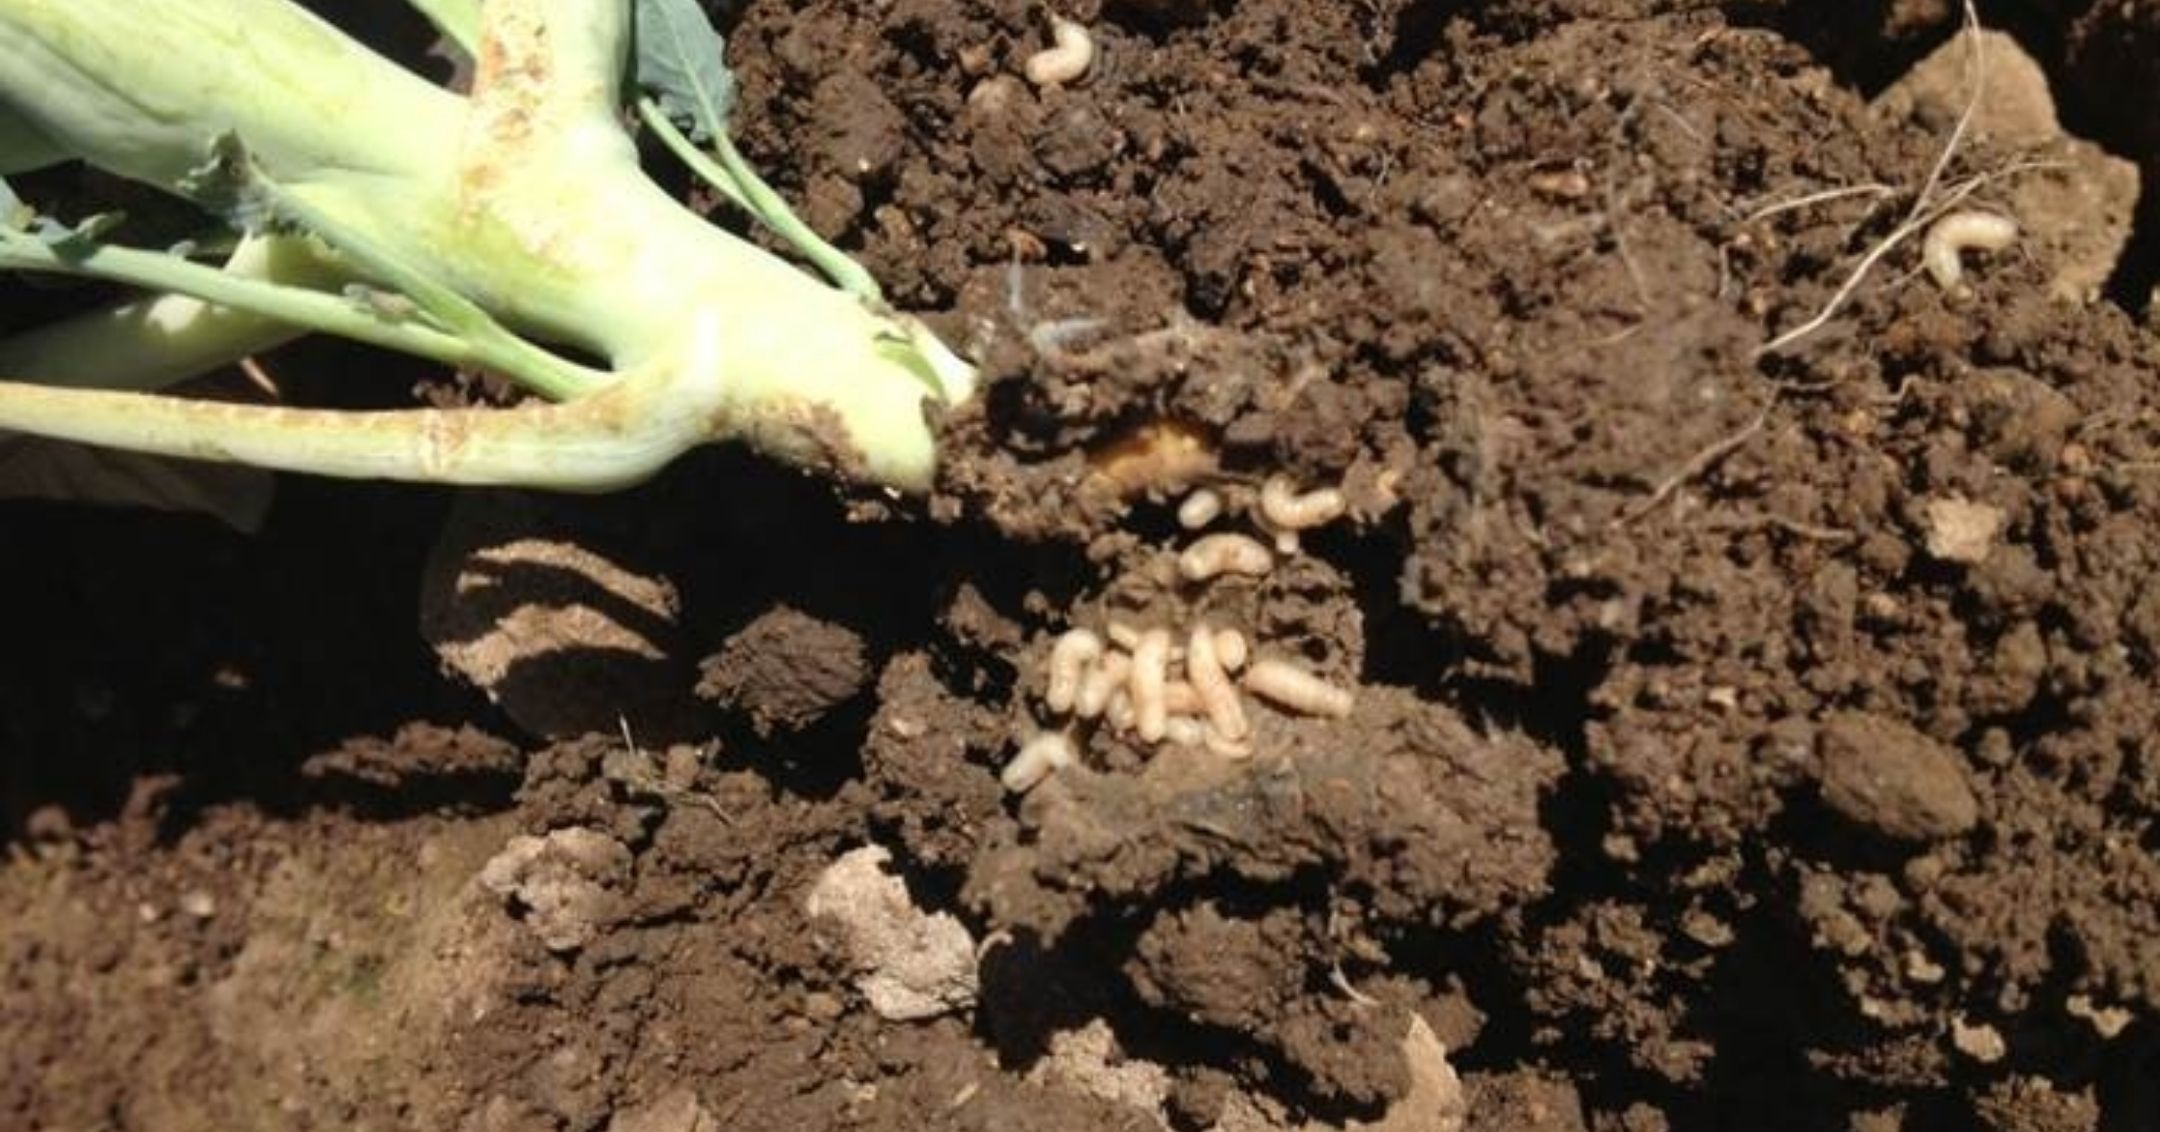 Cabbage Maggot Damage